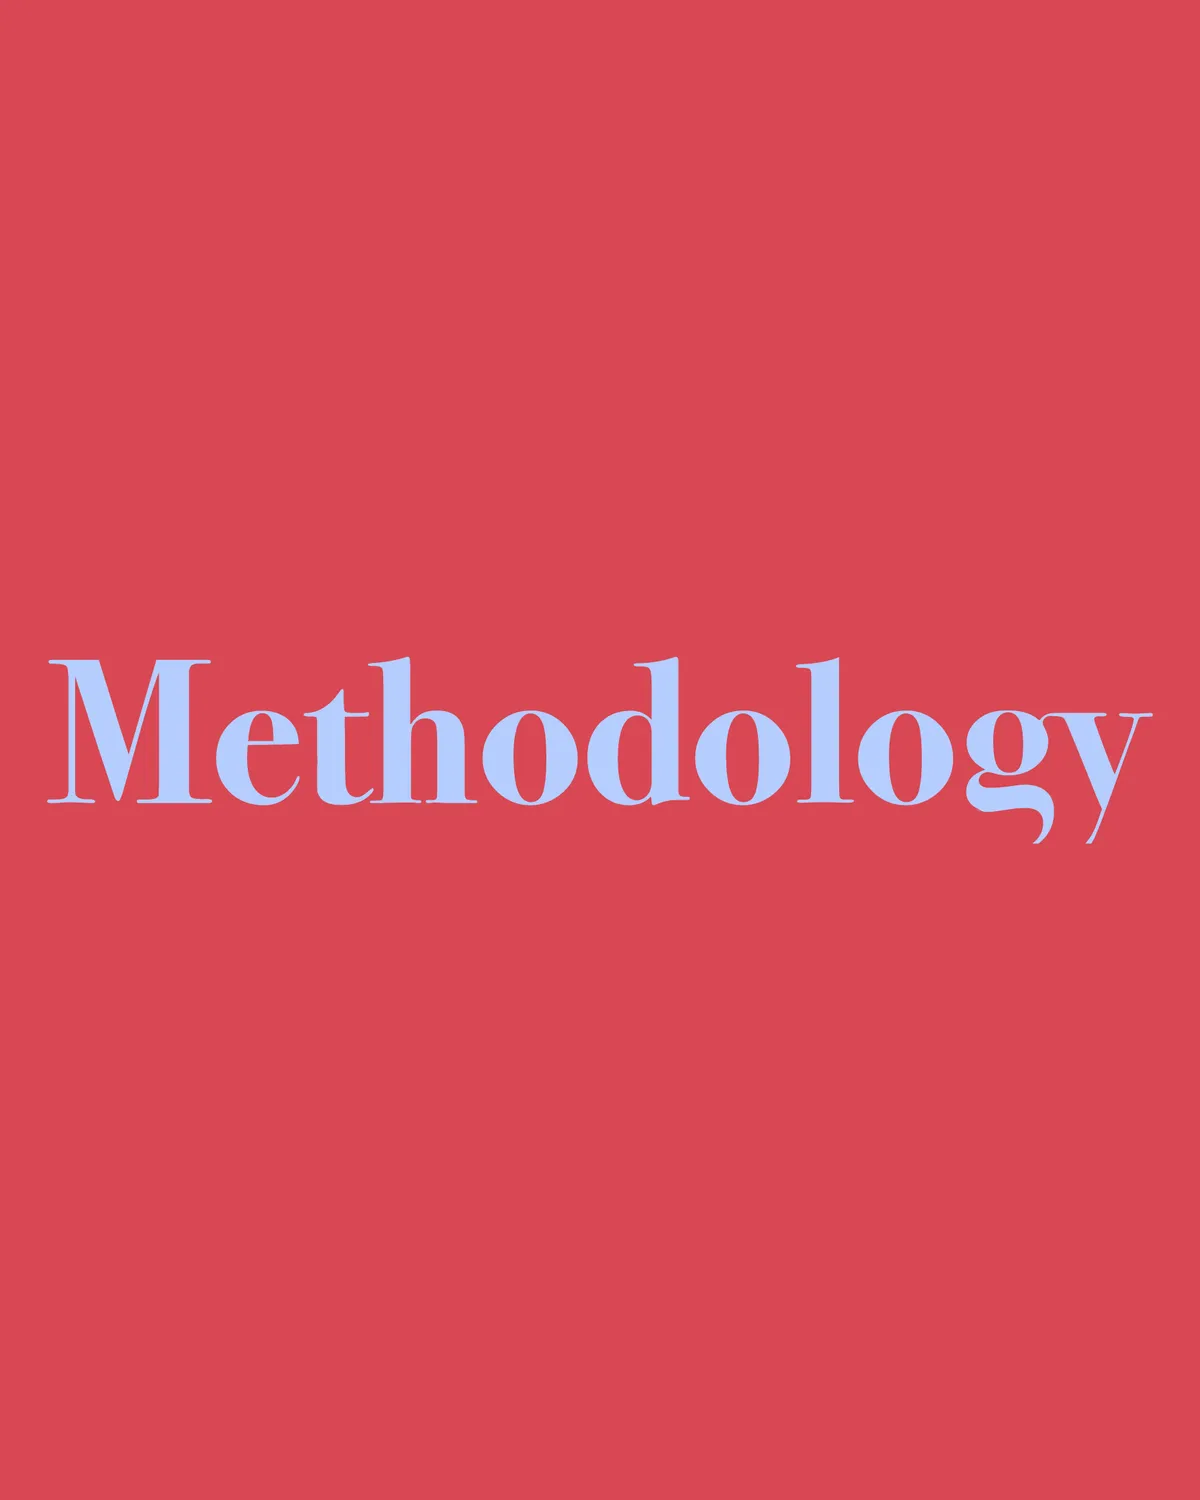 Methodology 05